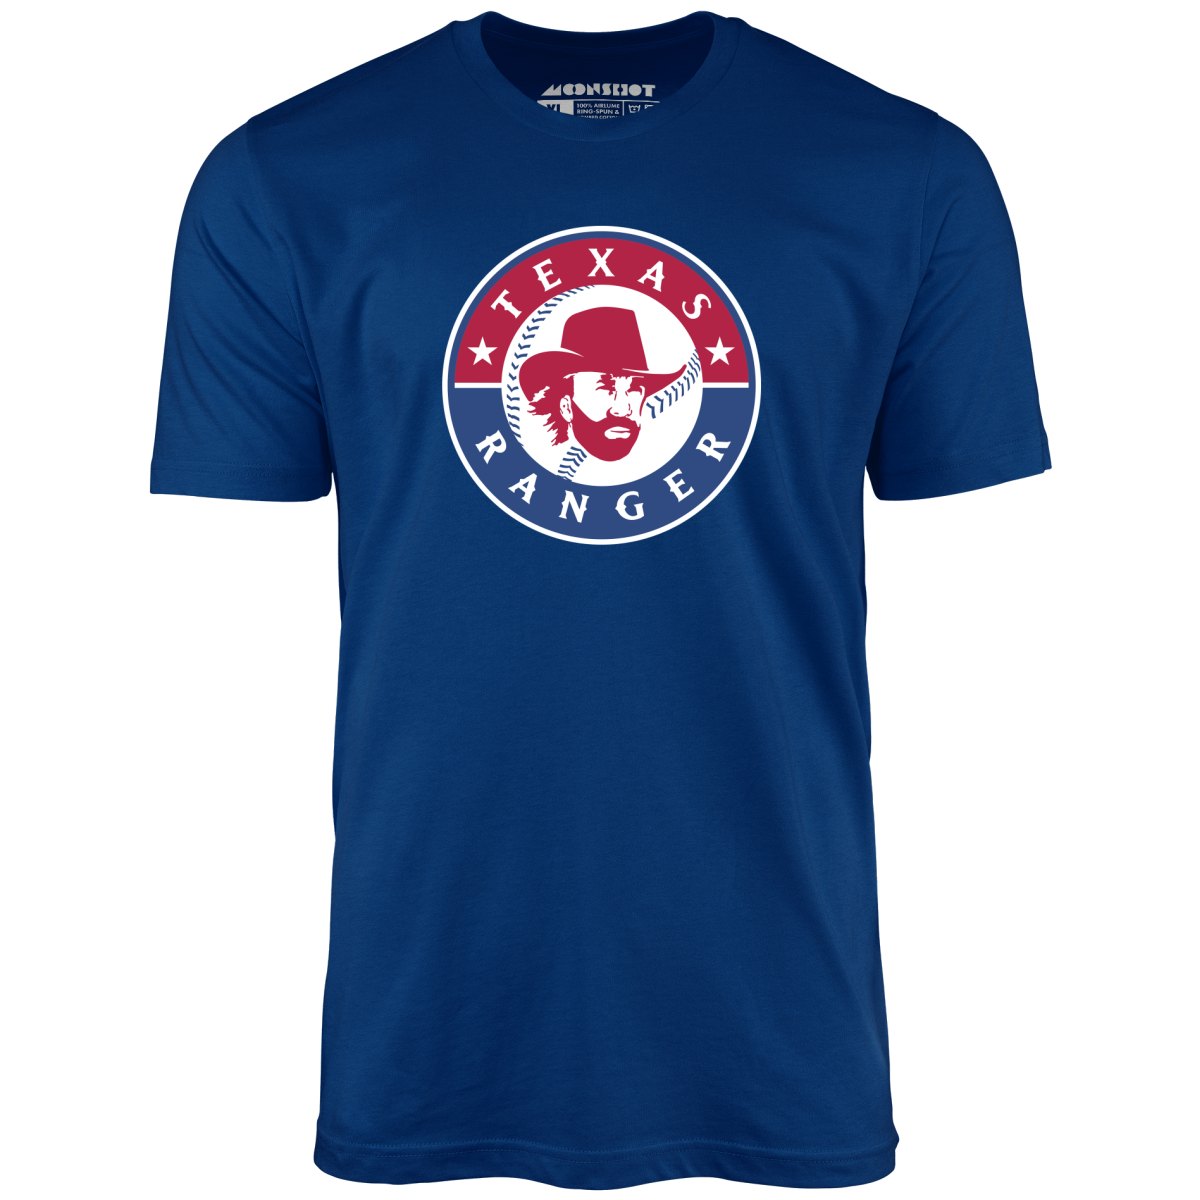 Walker Texas Ranger Mashup - Unisex T-Shirt